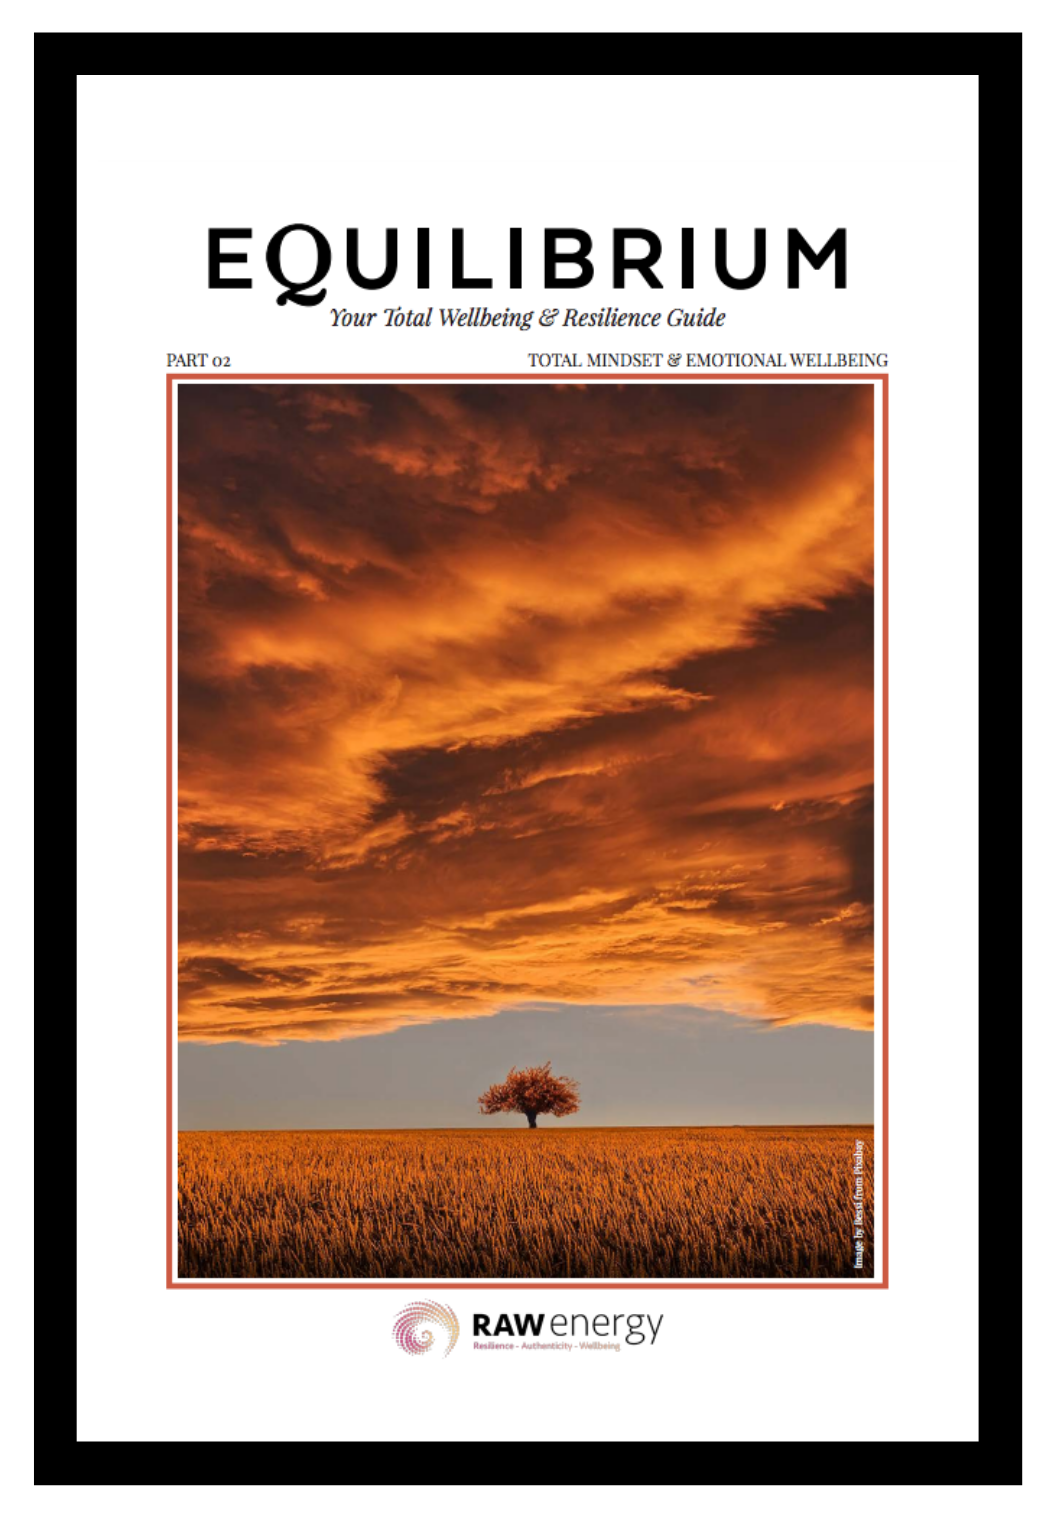 EQUILIBRIUM magazine - mindset & emotion